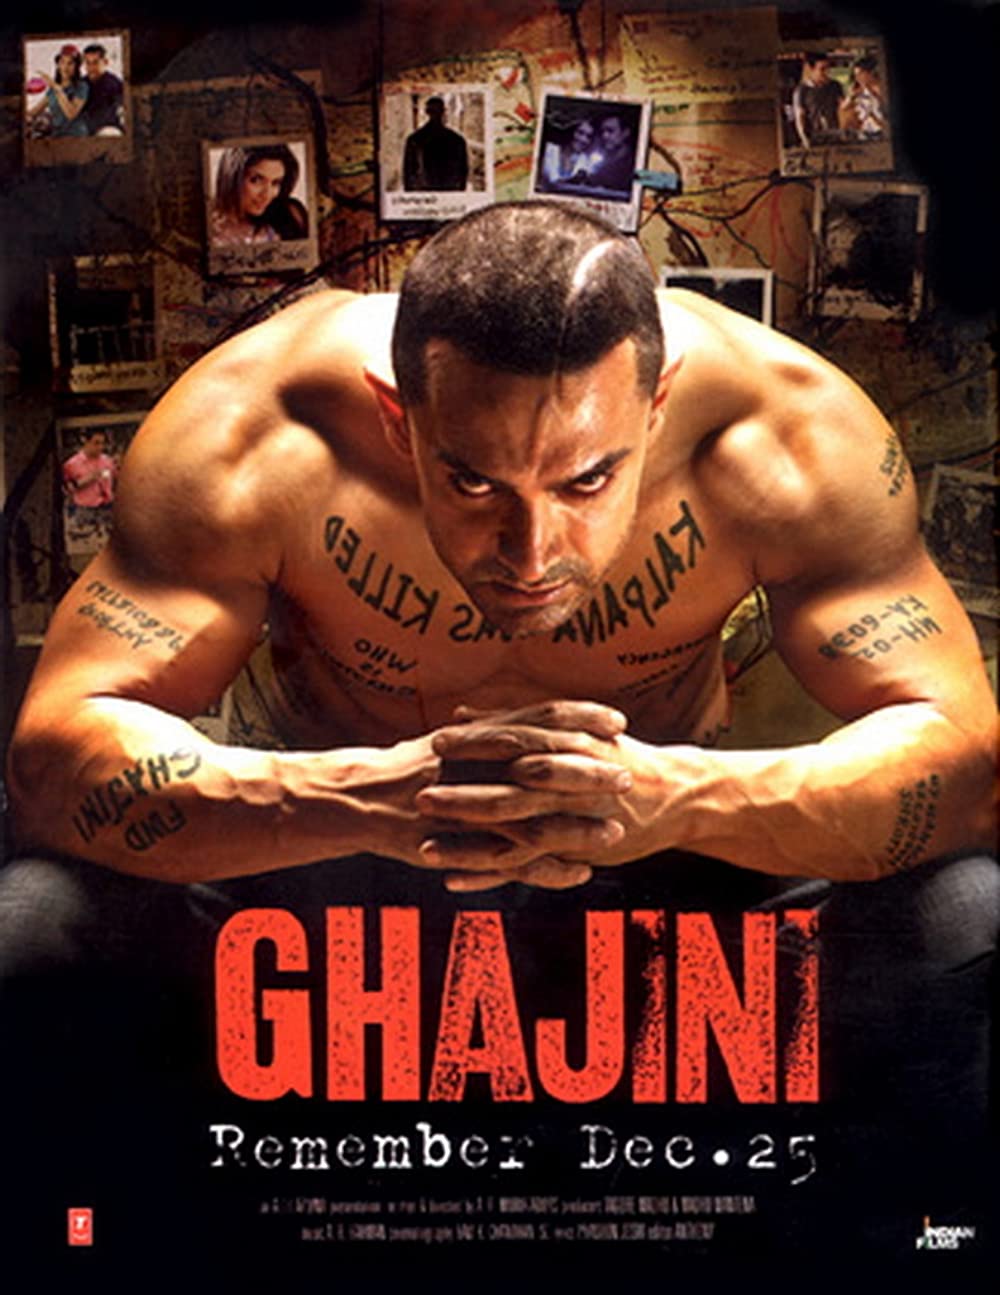 ดูหนังออนไลน์ฟรี Ghajini (2008) เกิดมาฆ่า…กาจินี